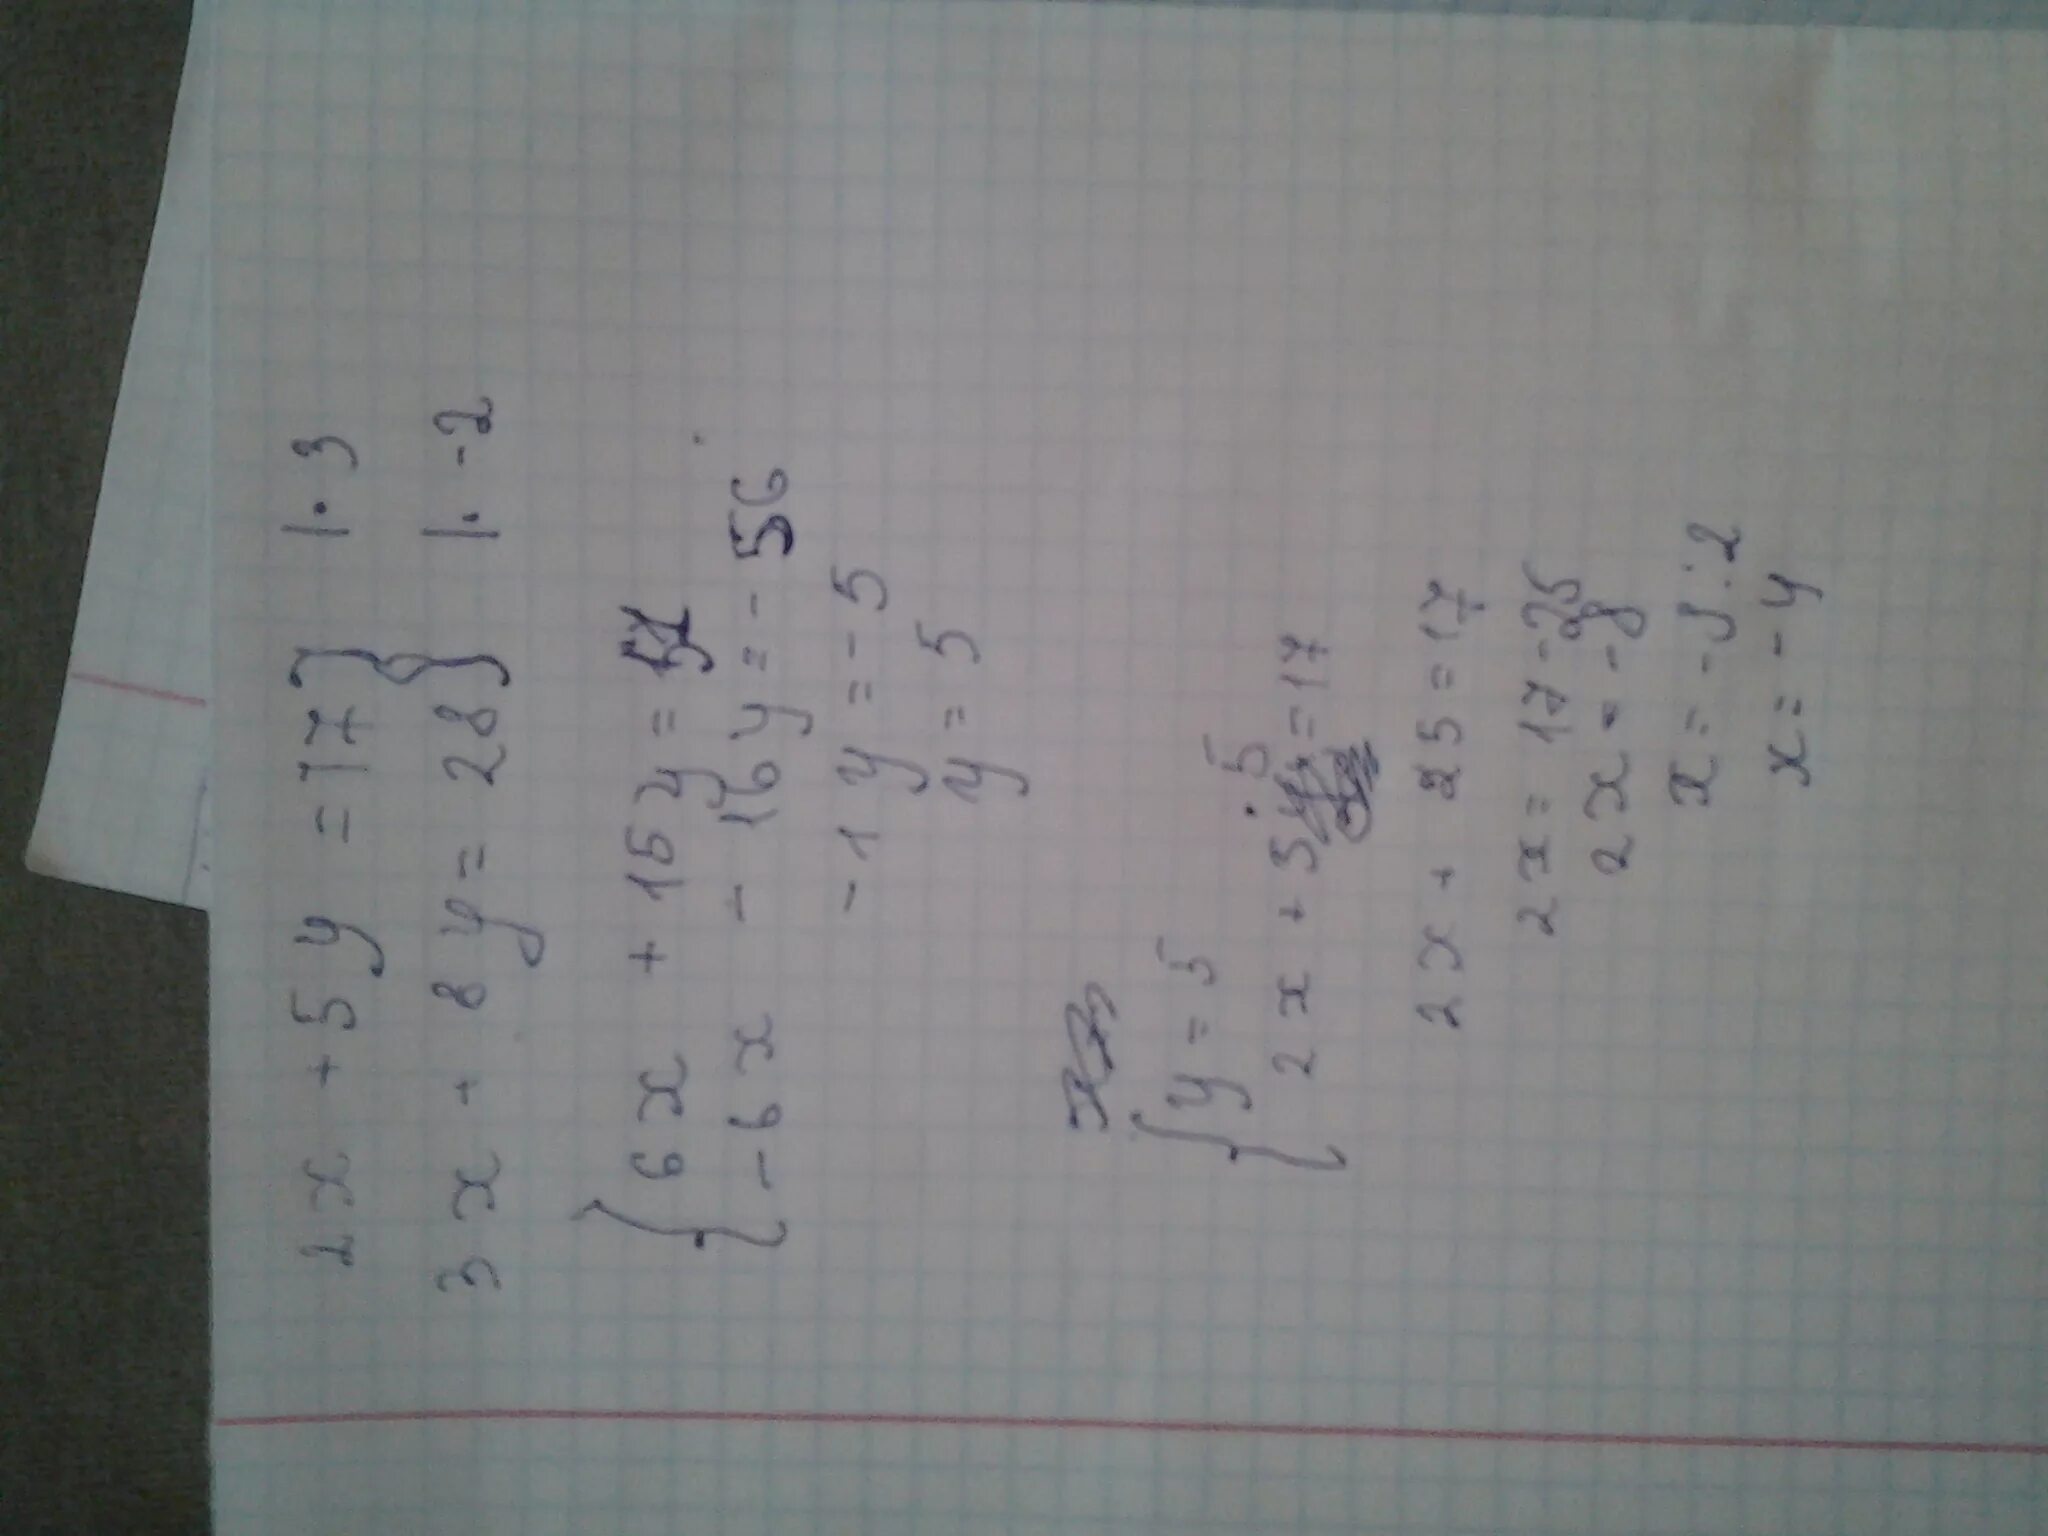 Х 5у 2х у 8. 3х+5у=17 3х+8у=28. 5х + 3у = 17;. -2х<=-5-17. 5.17.3.